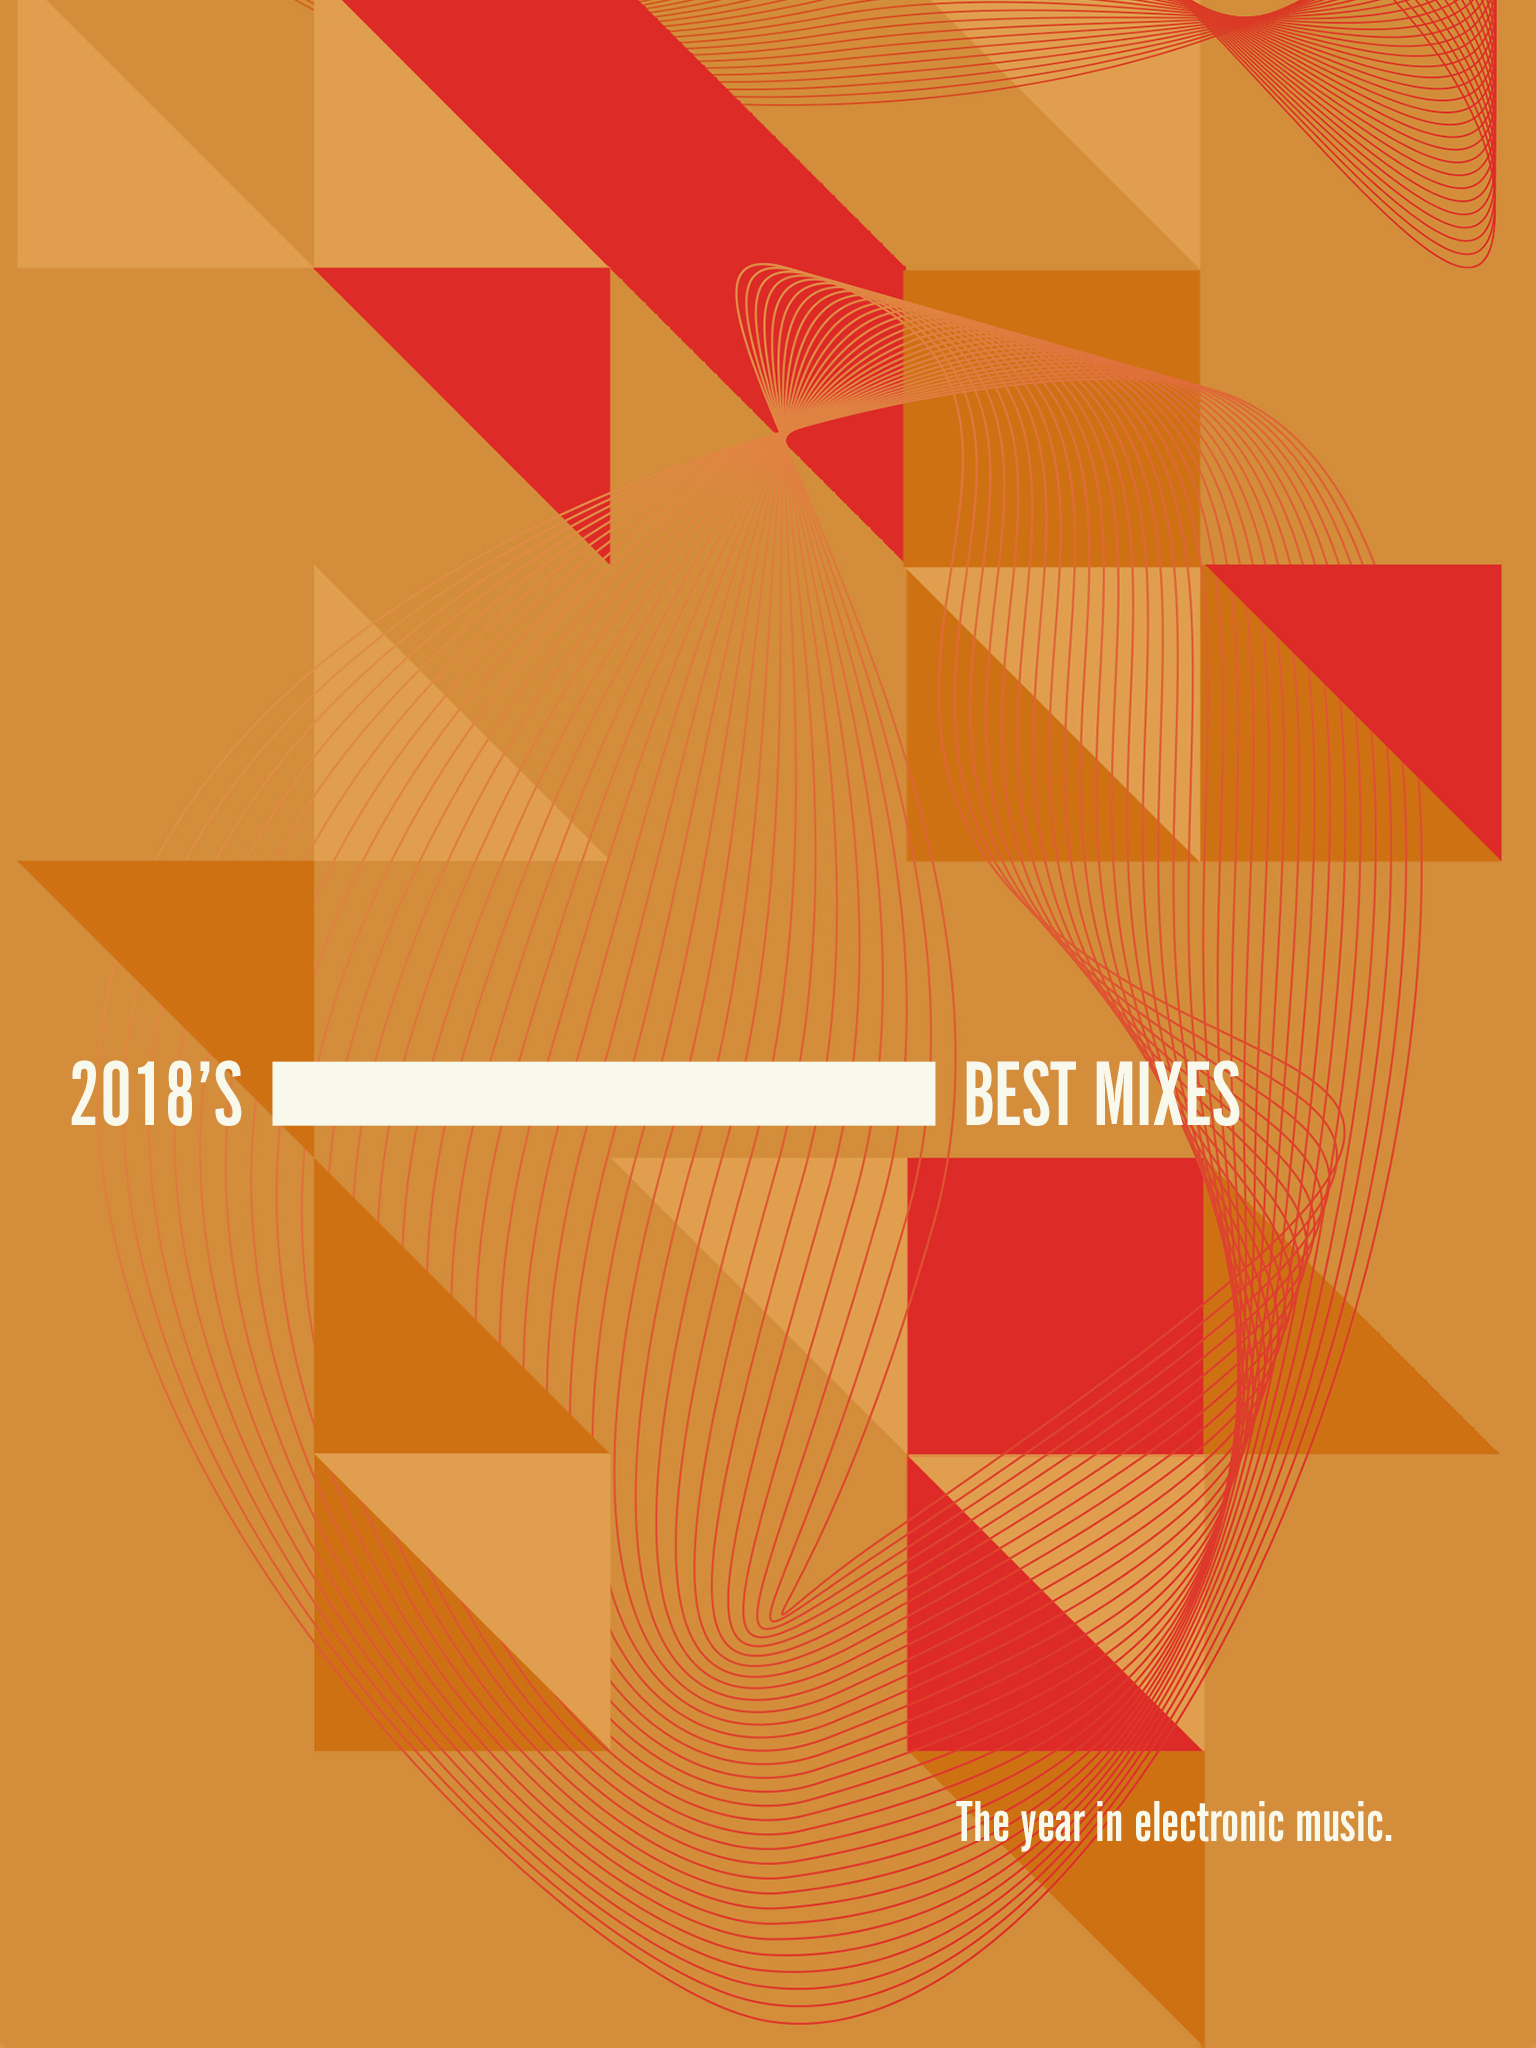 2018's Best Mixes